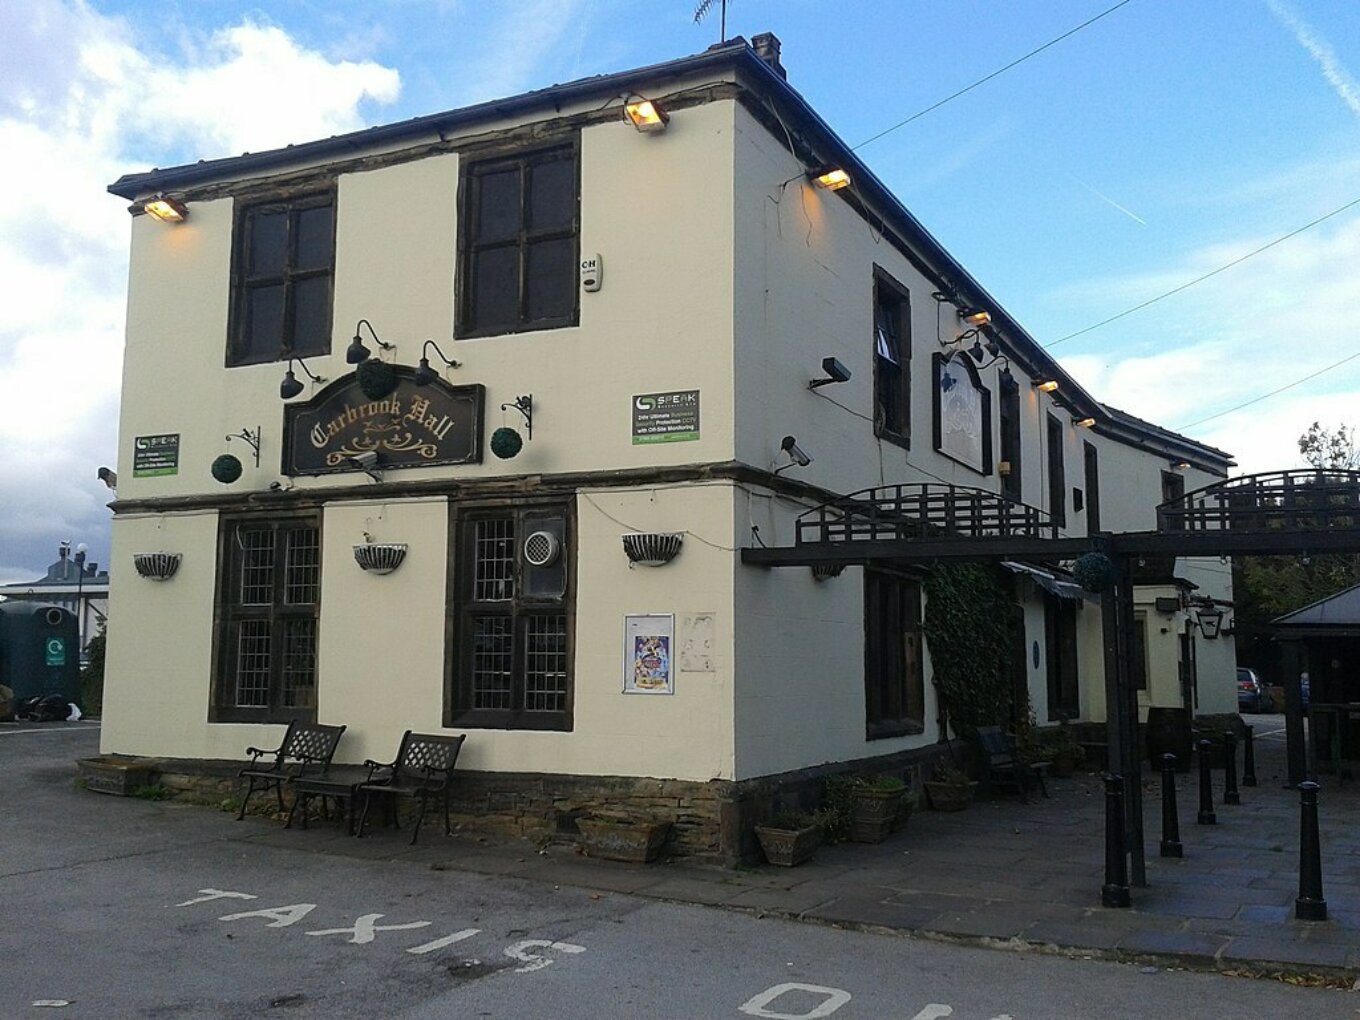 Carbrook Hall pub